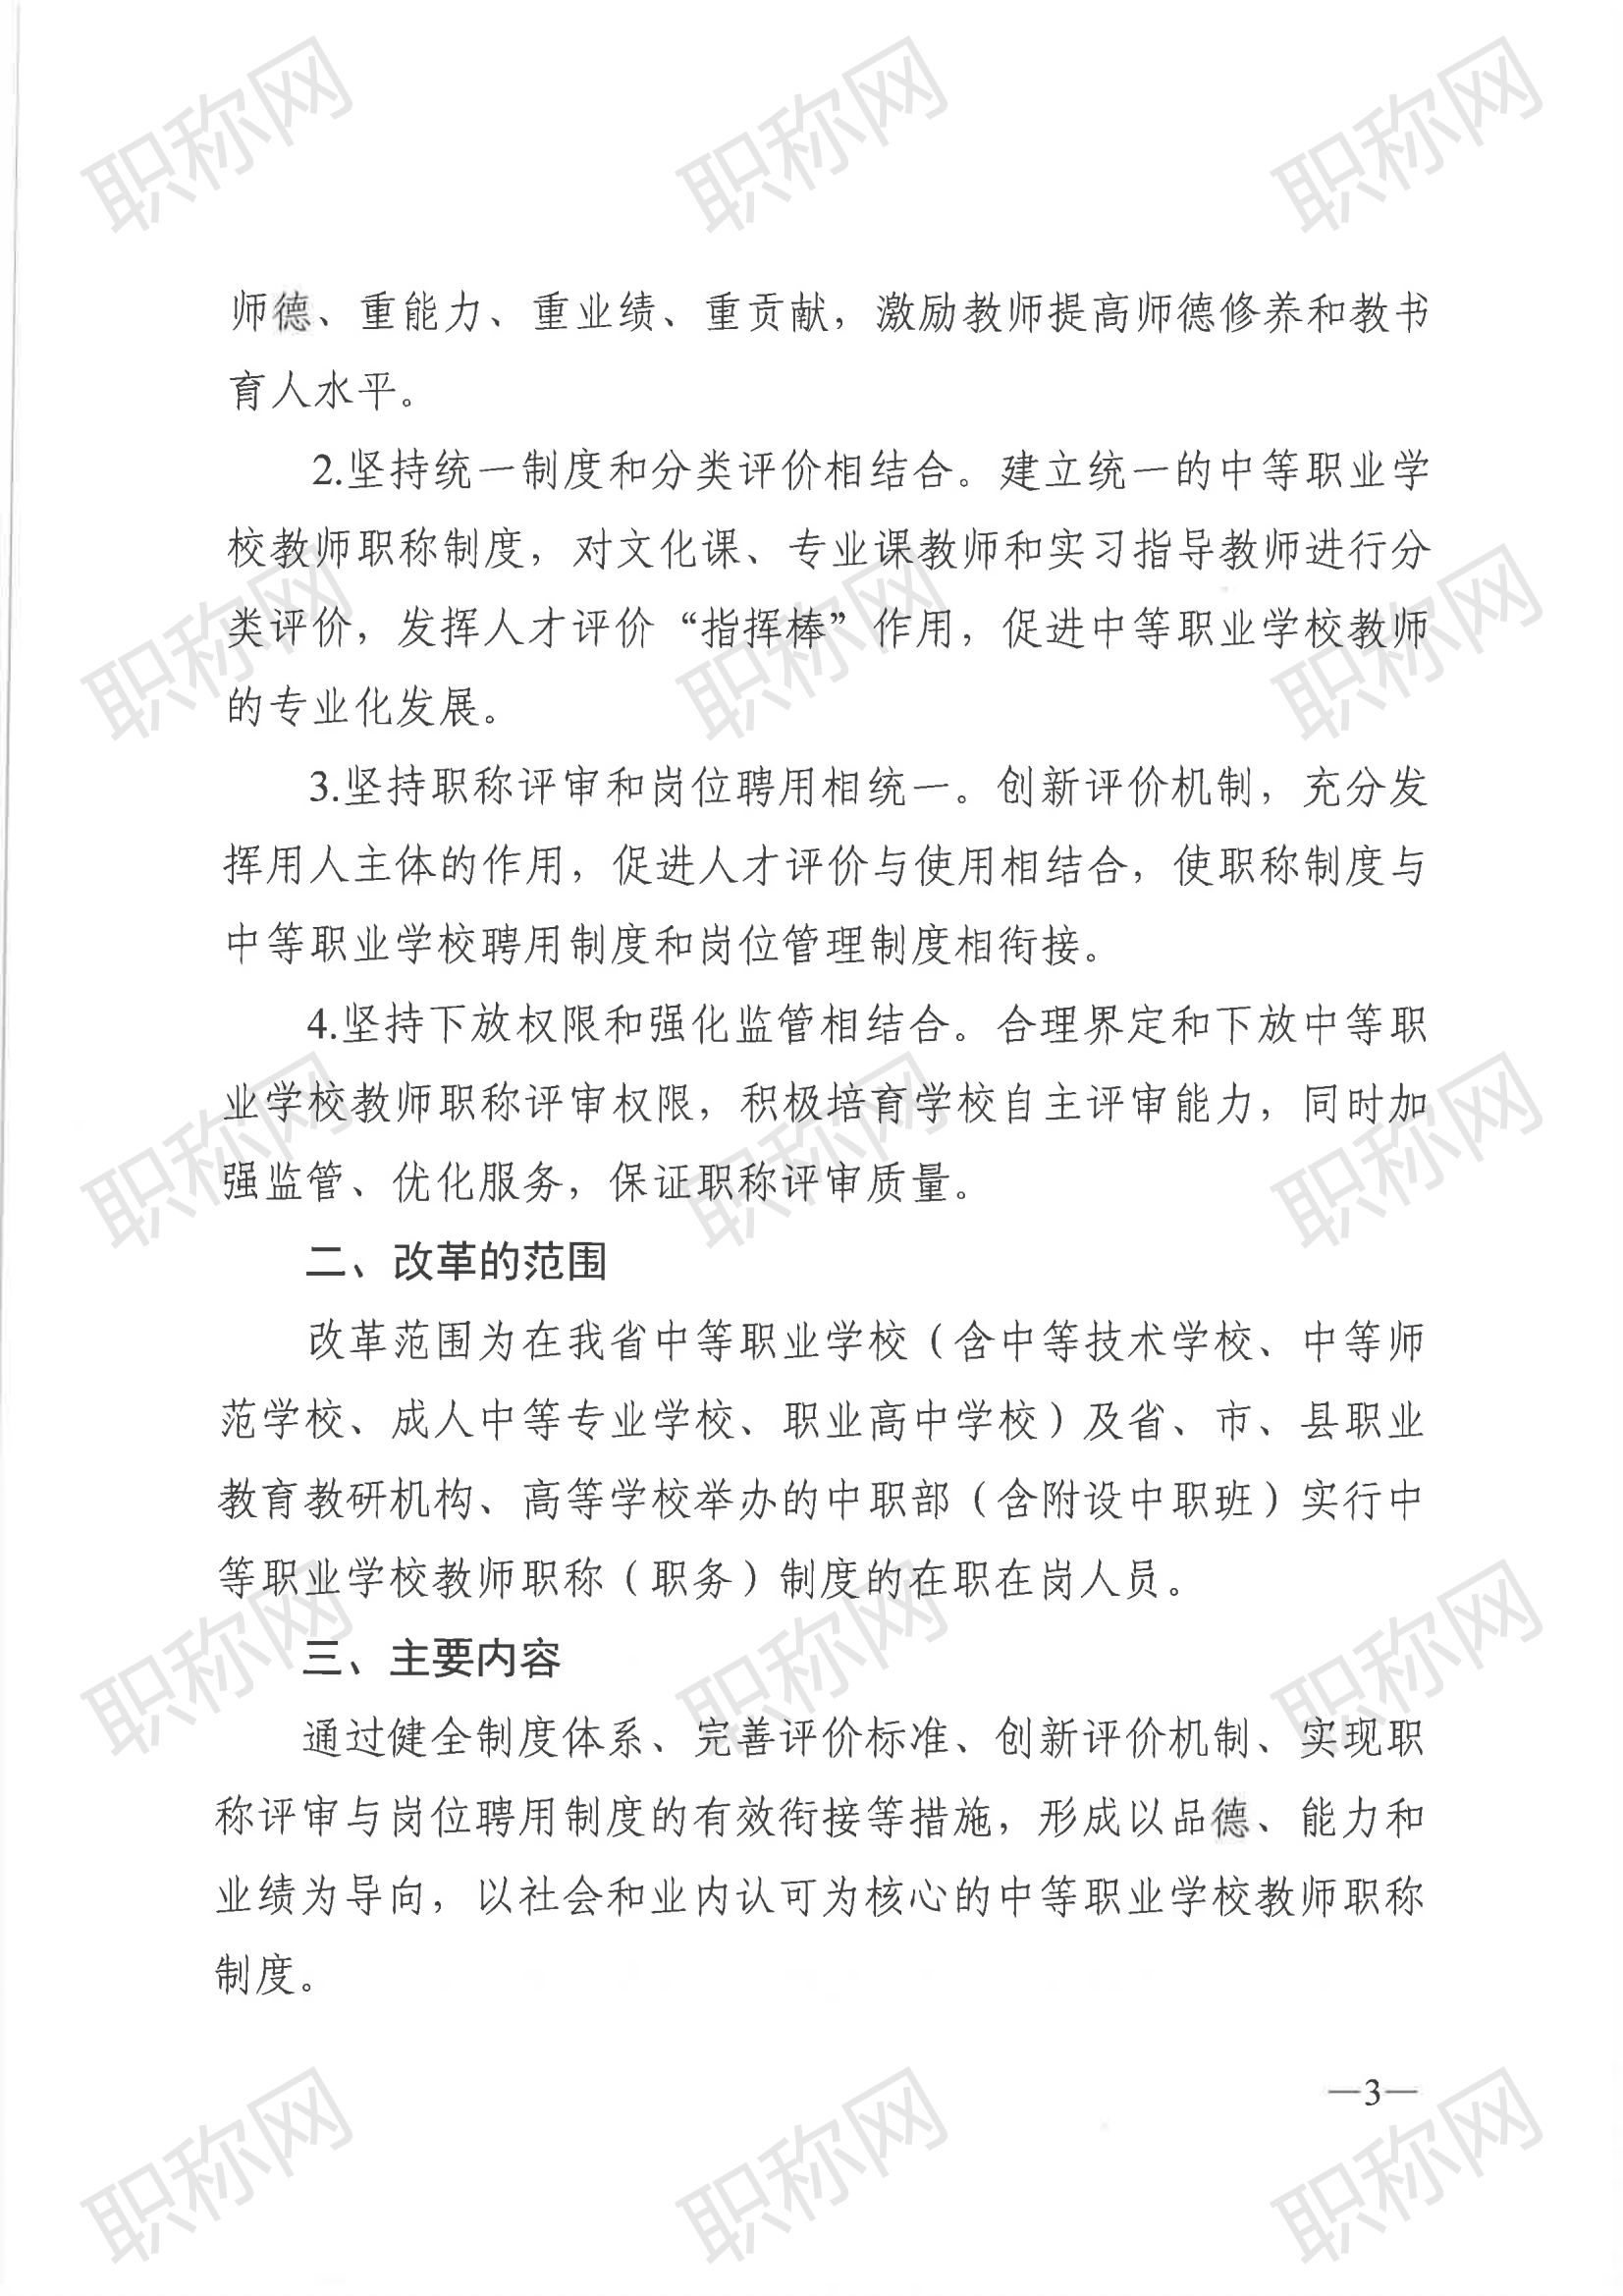 广东省深化中等职业学校教师职称制度改革实施方案》的通知_02.png